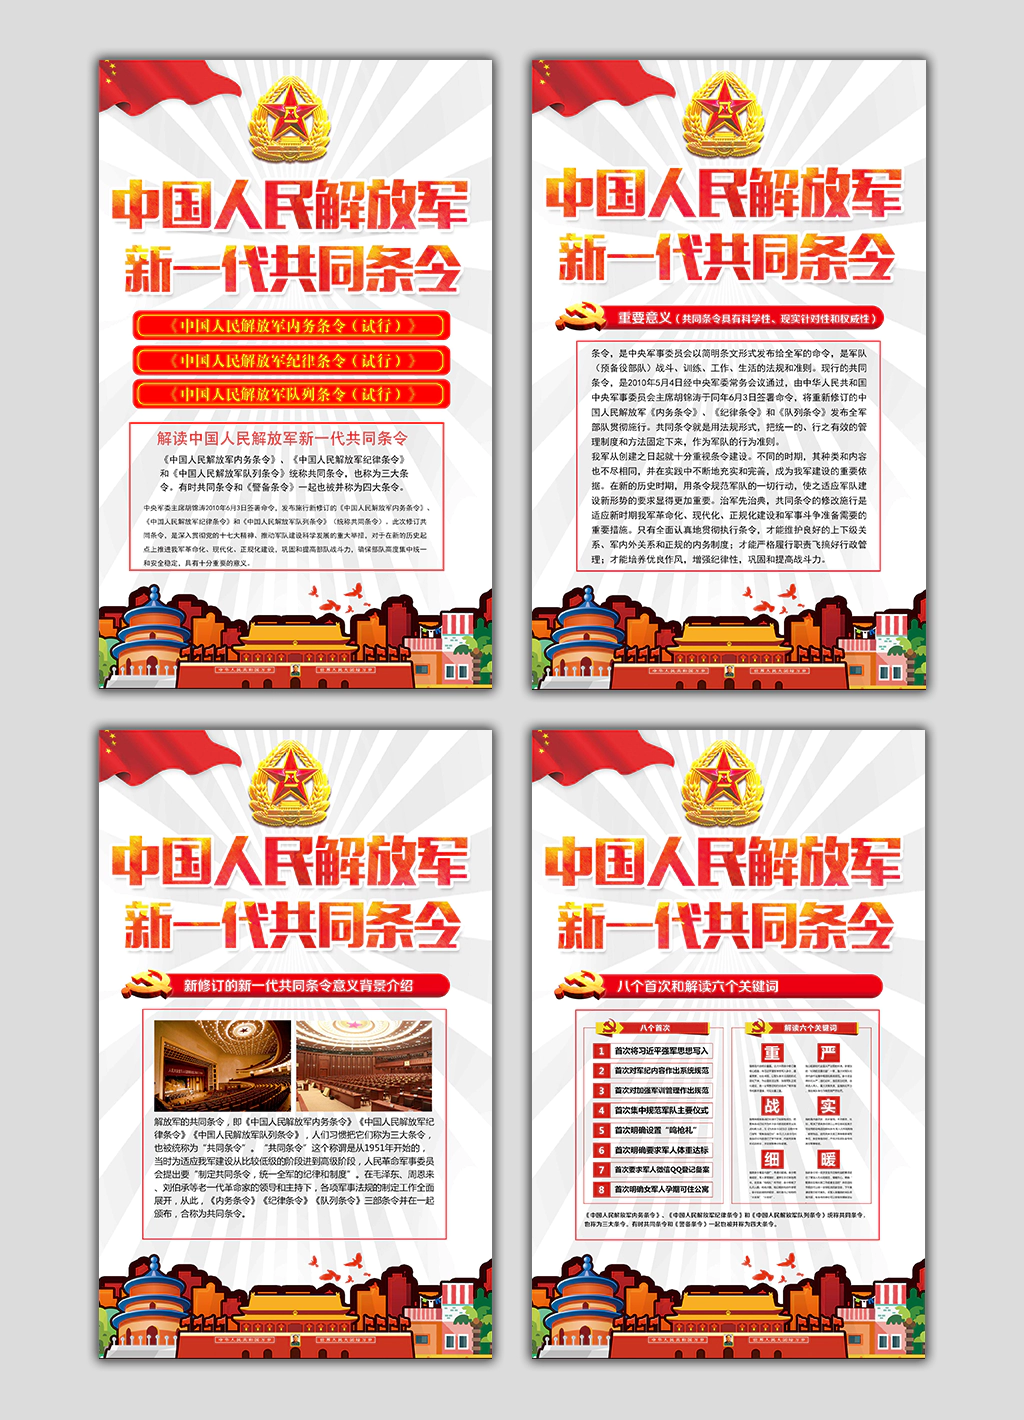 中国人民解放军新一代共同条令军队连队宣传展板